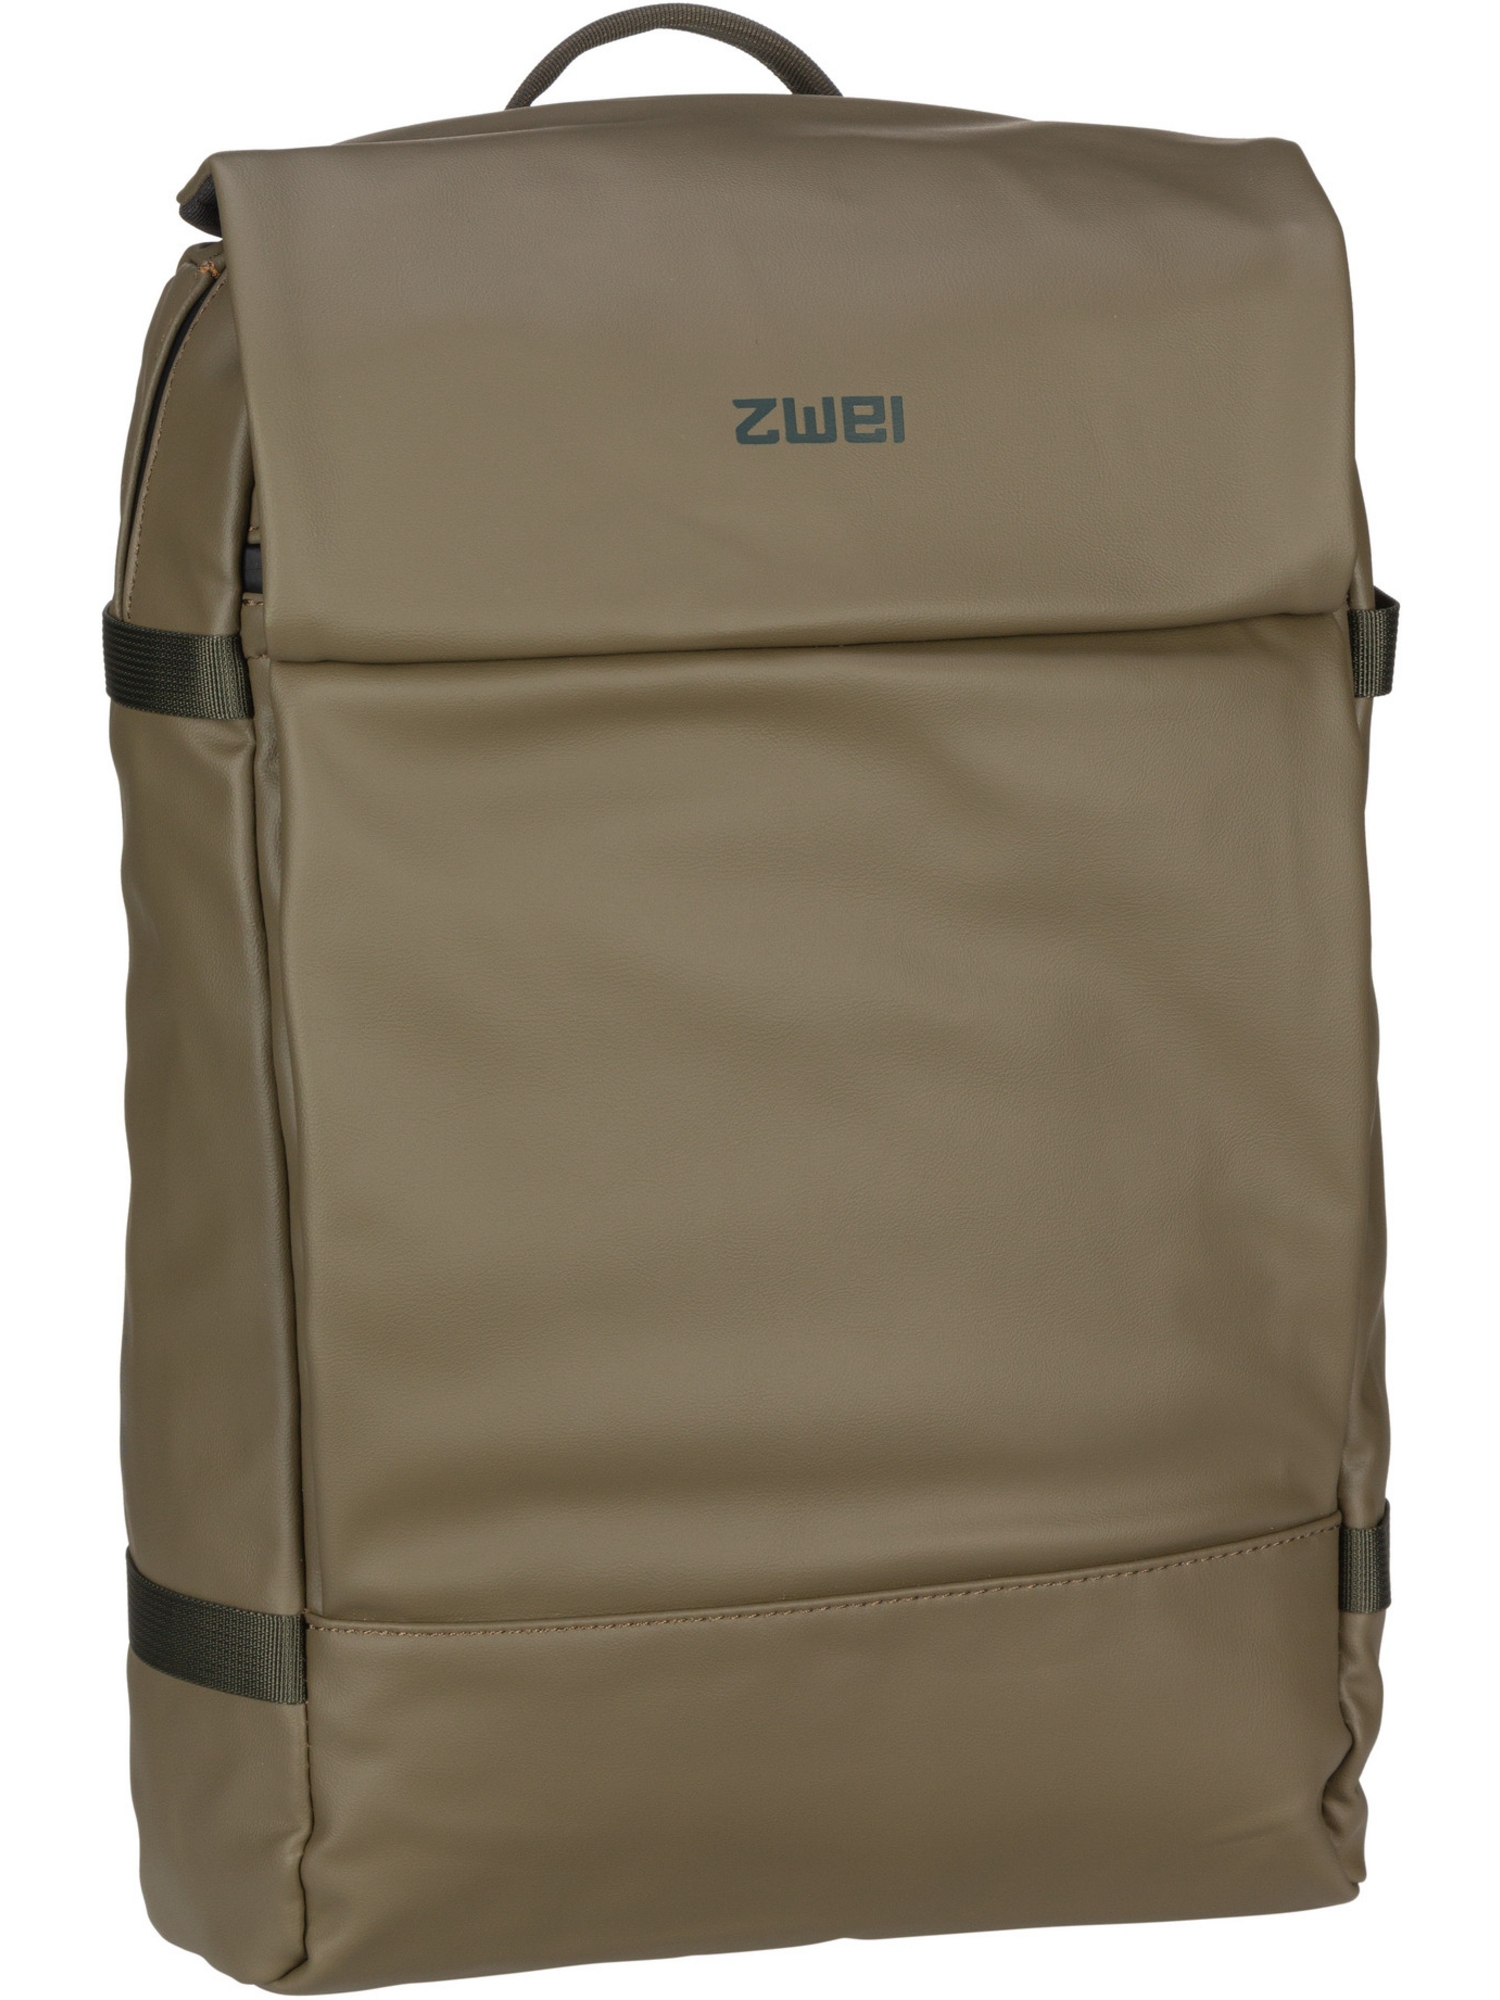 Рюкзак Zwei/Backpack Aqua AQR150, оливковый